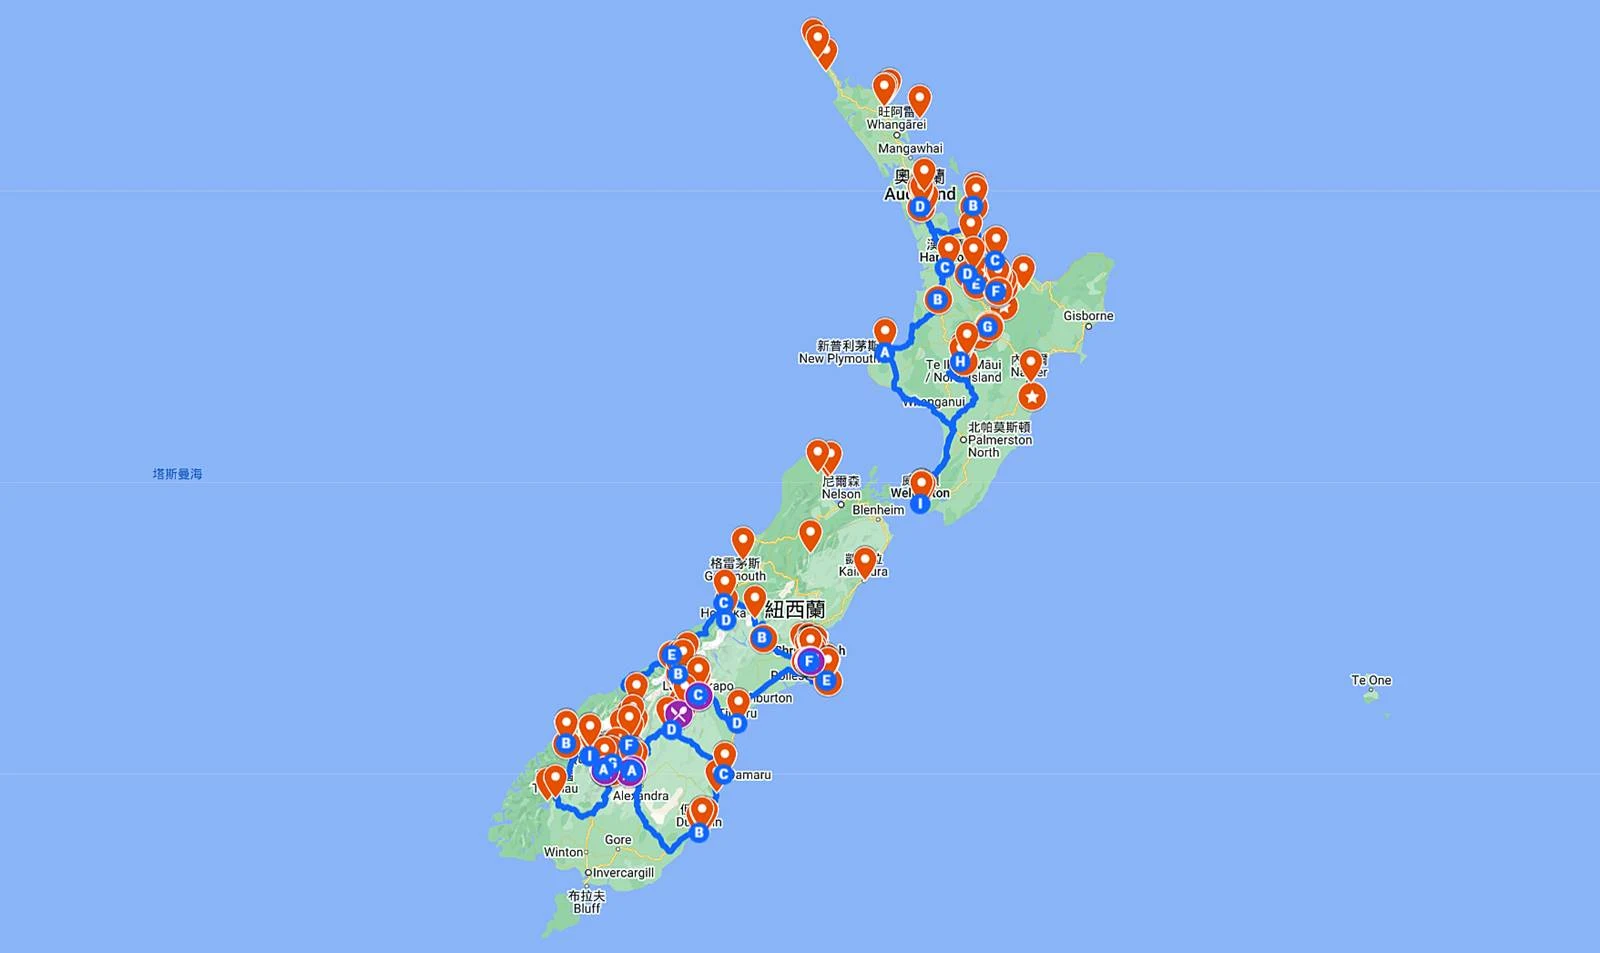 基督城-景點-推薦-地圖-Map-基督城自由行景點-基督城必玩景點-基督城必去景點-基督城好玩景點-市區-附近-攻略-基督城旅遊景點-基督城觀光景點-基督城行程-基督城旅行-紐西蘭-南島-Christchurch-Tourist-Attraction